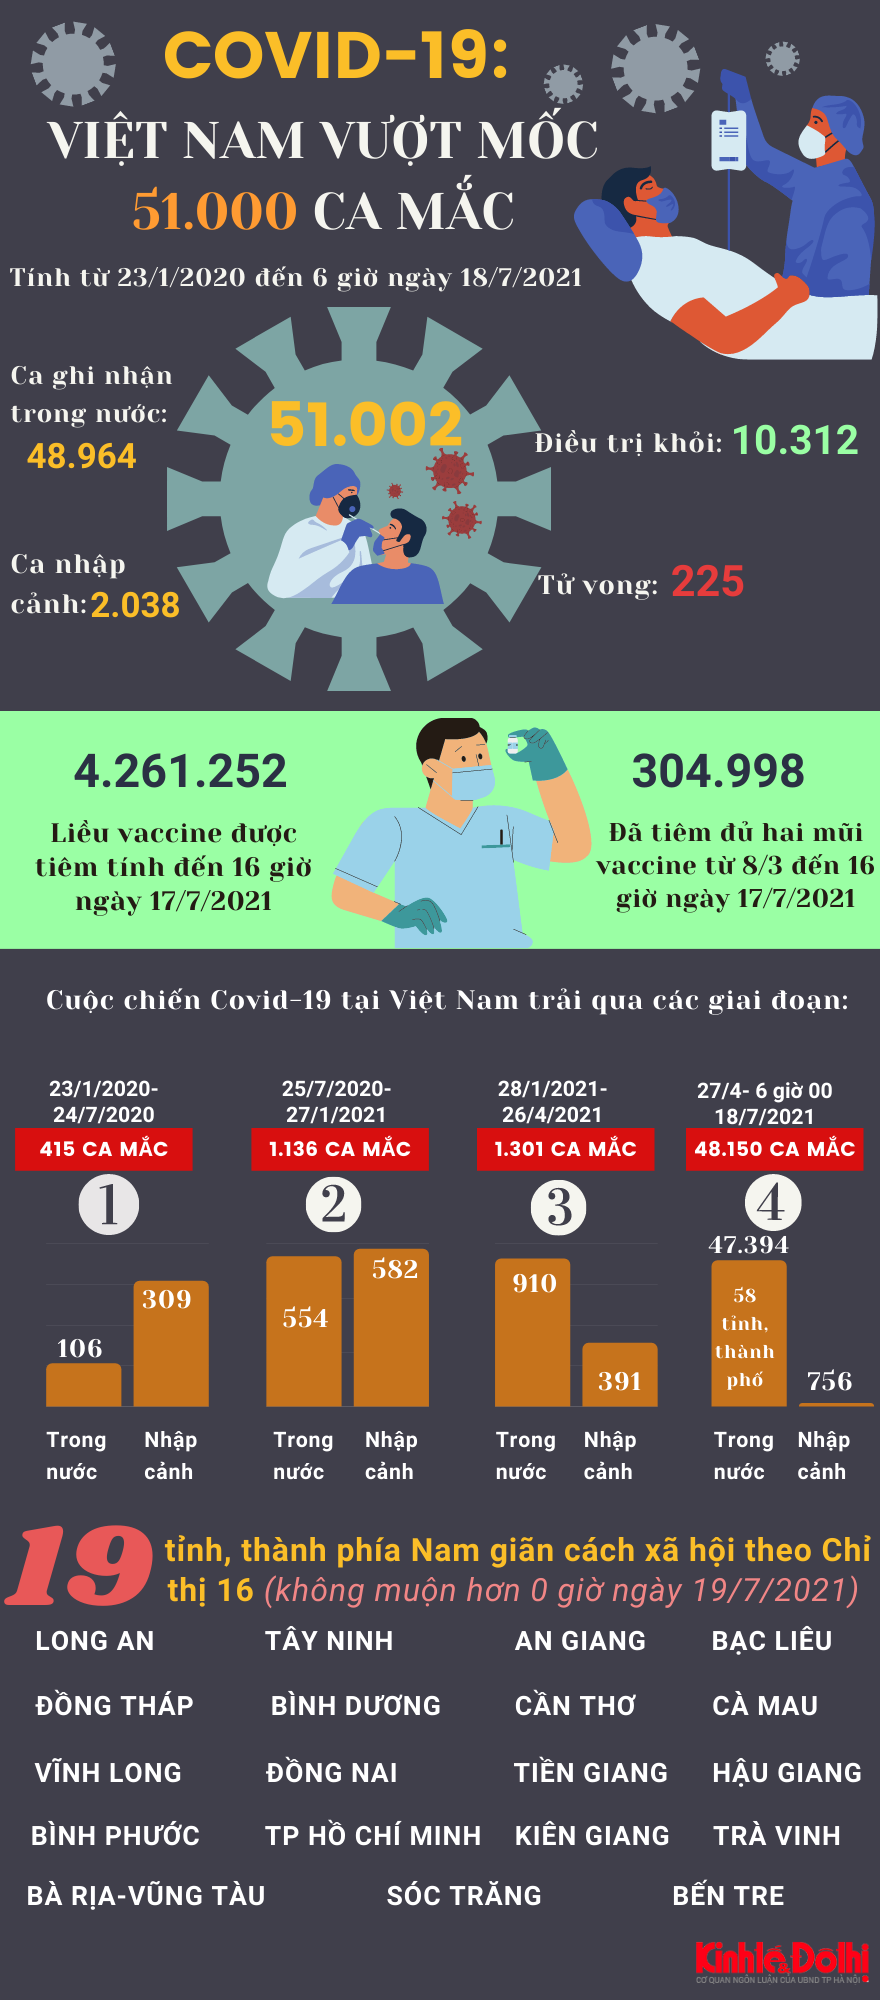 [Infographic] Việt Nam ghi nhận hơn 51.000 người mắc Covid-19 - Ảnh 1